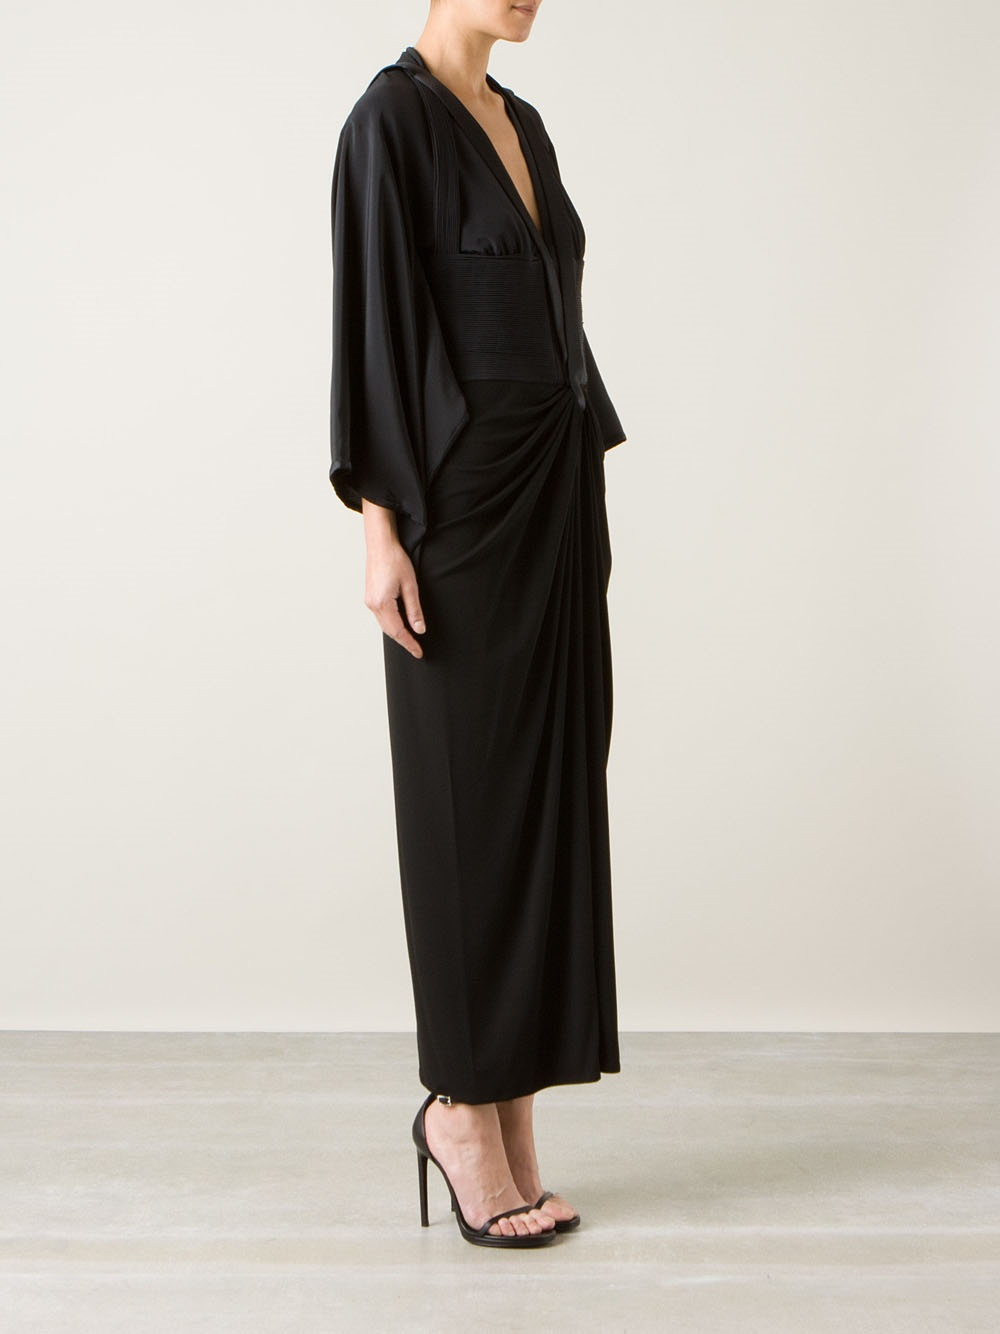 Lyst - Givenchy Draped Kimono Sleeve Dress in Black